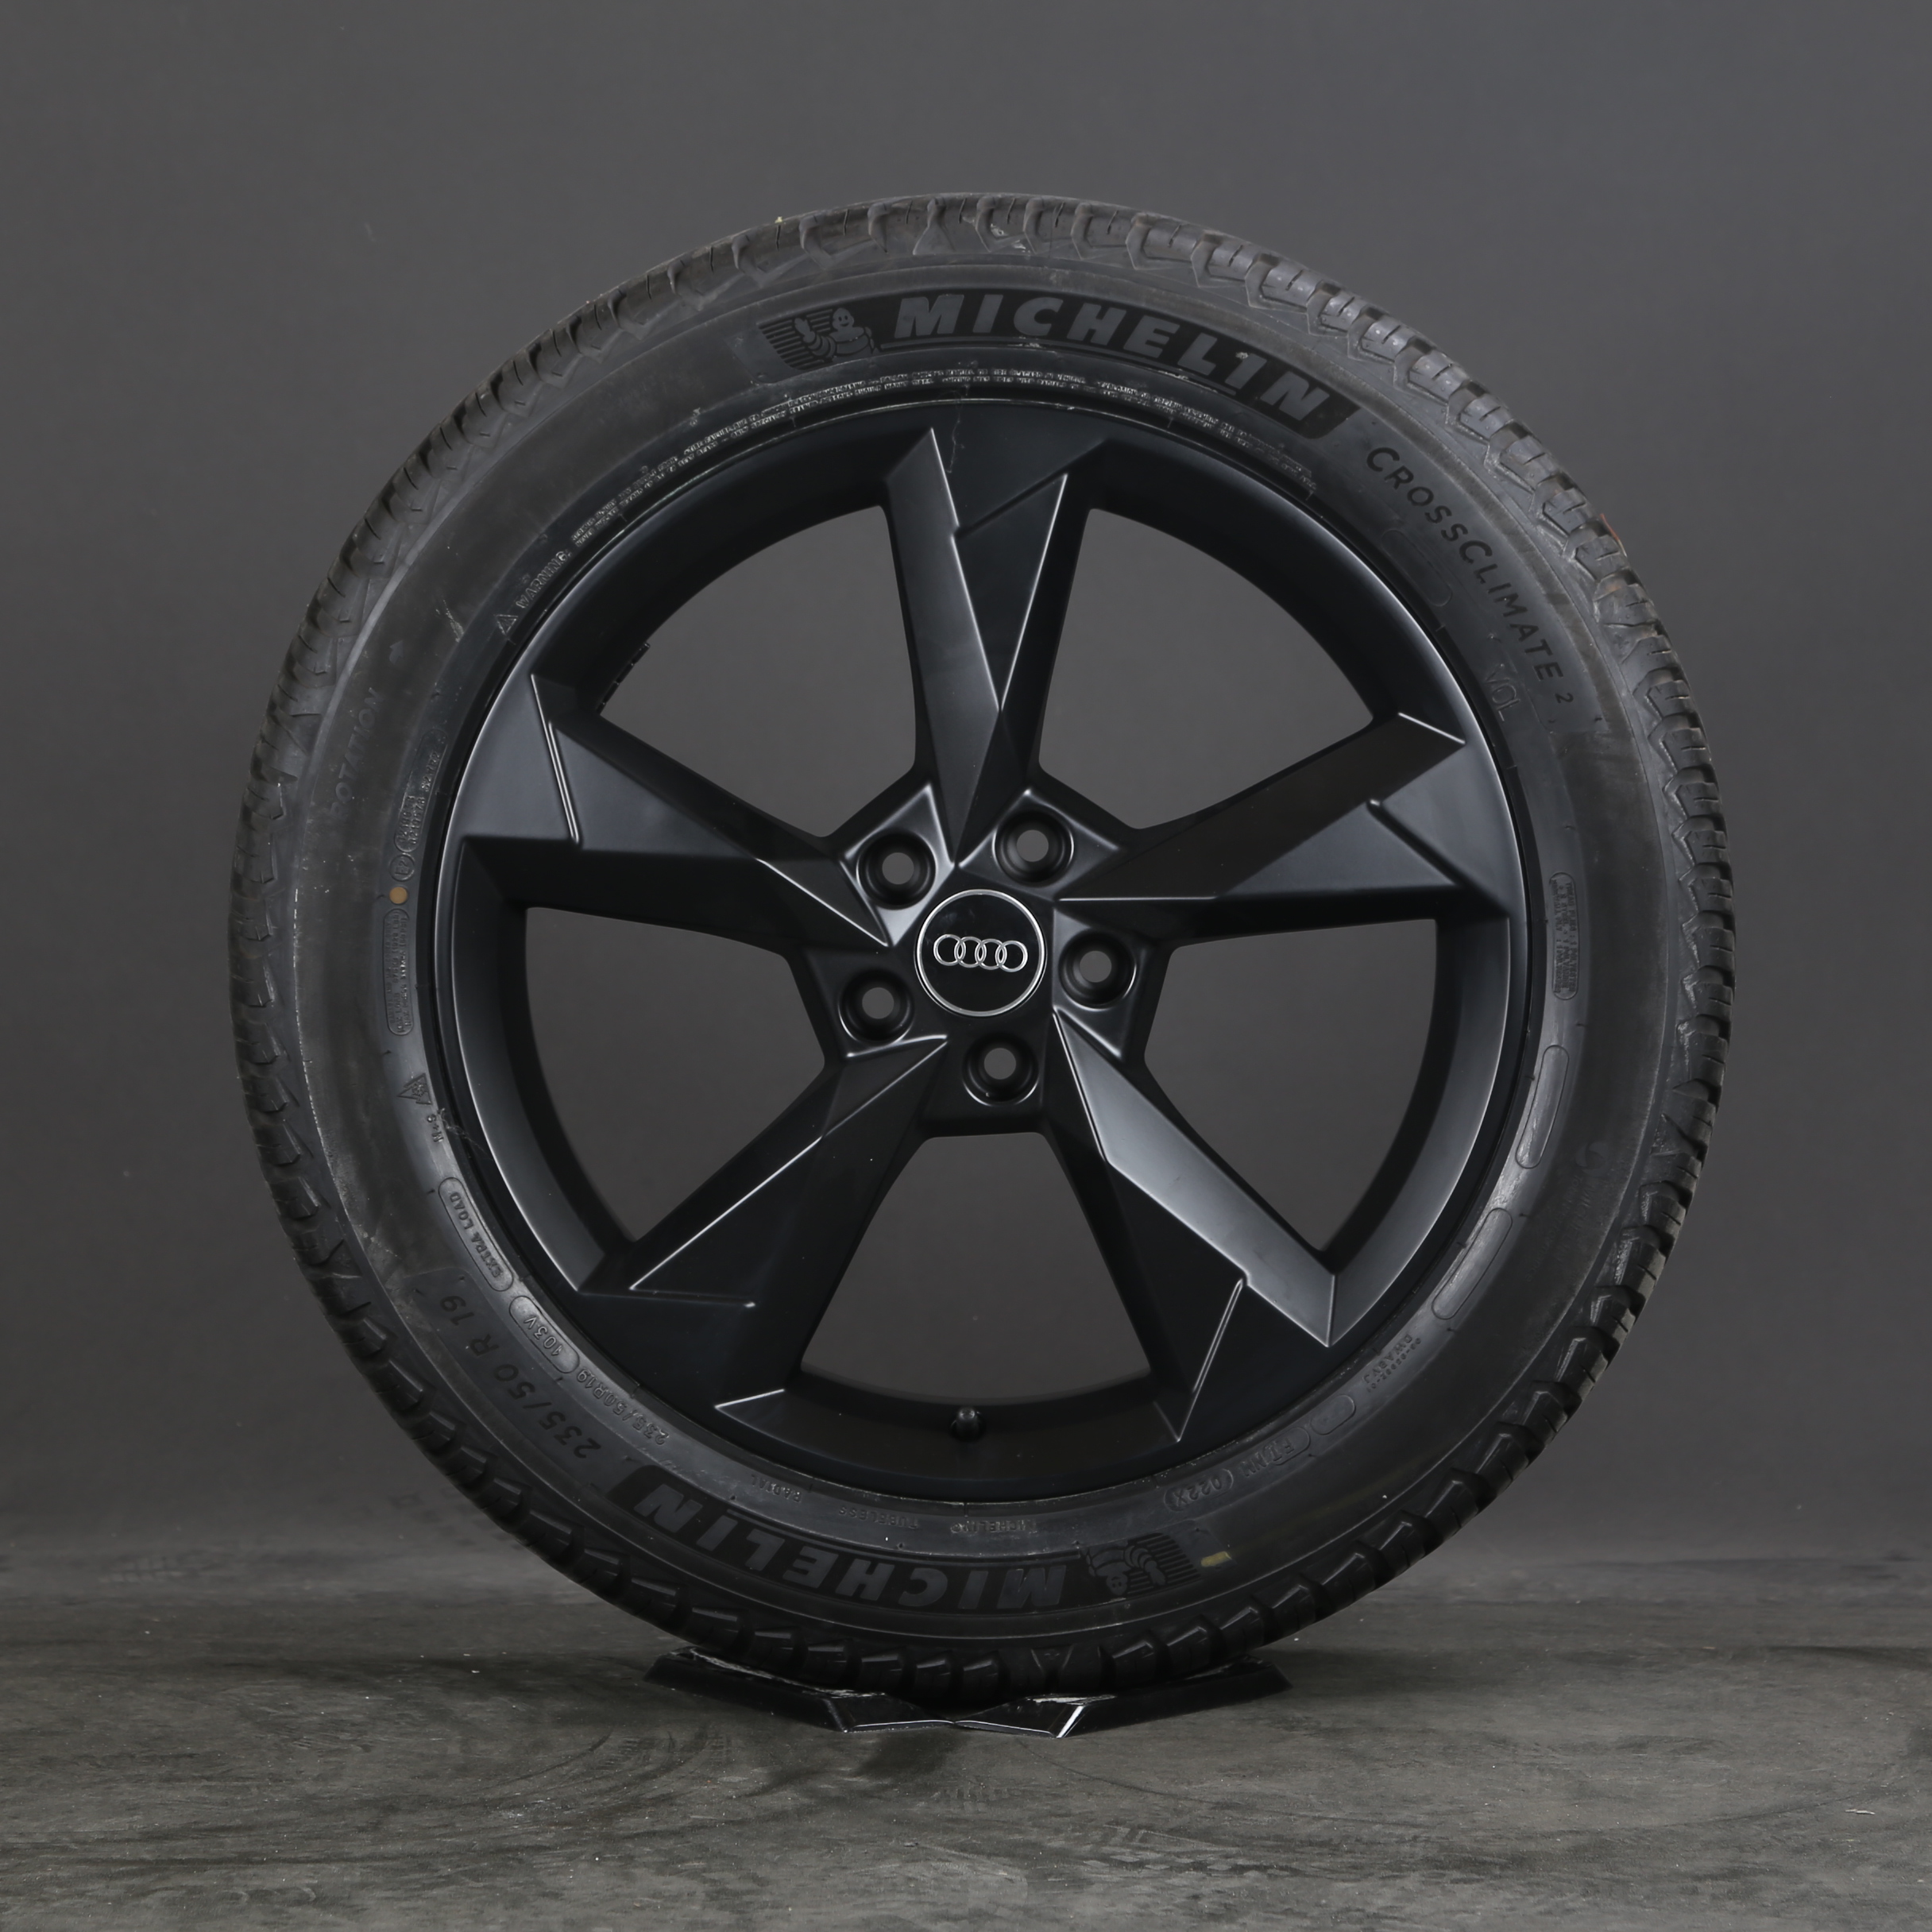 Genuine 19-inch Audi Q3 F3 all-season wheels 83A601025N All-weather